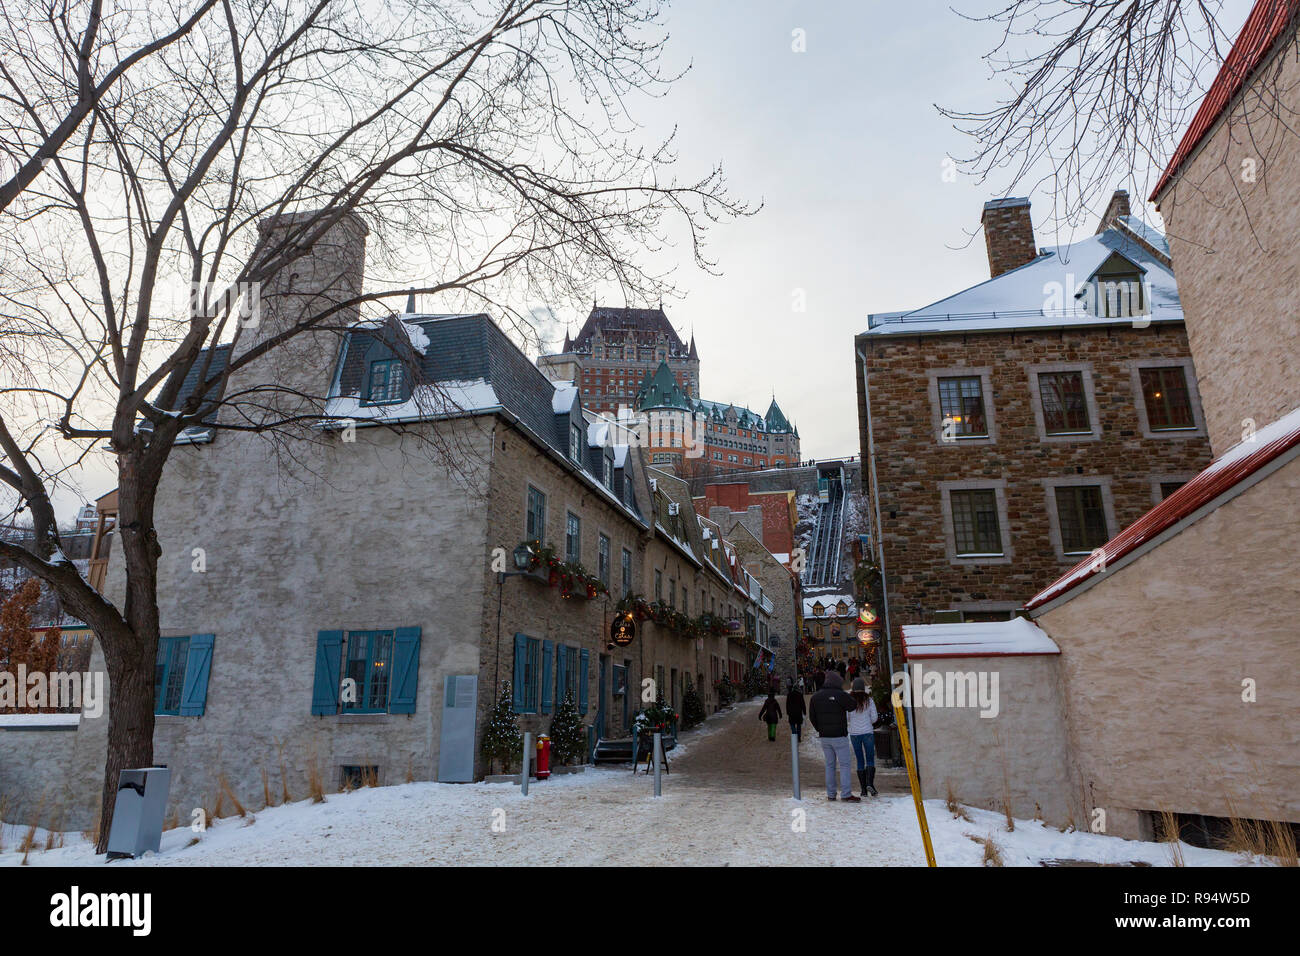 La ville de Québec, Québec, Canada est la plus ancienne colonie européenne en Amérique du Nord et la seule ville fortifiée au nord du Mexique dont les murs existent encore. Banque D'Images